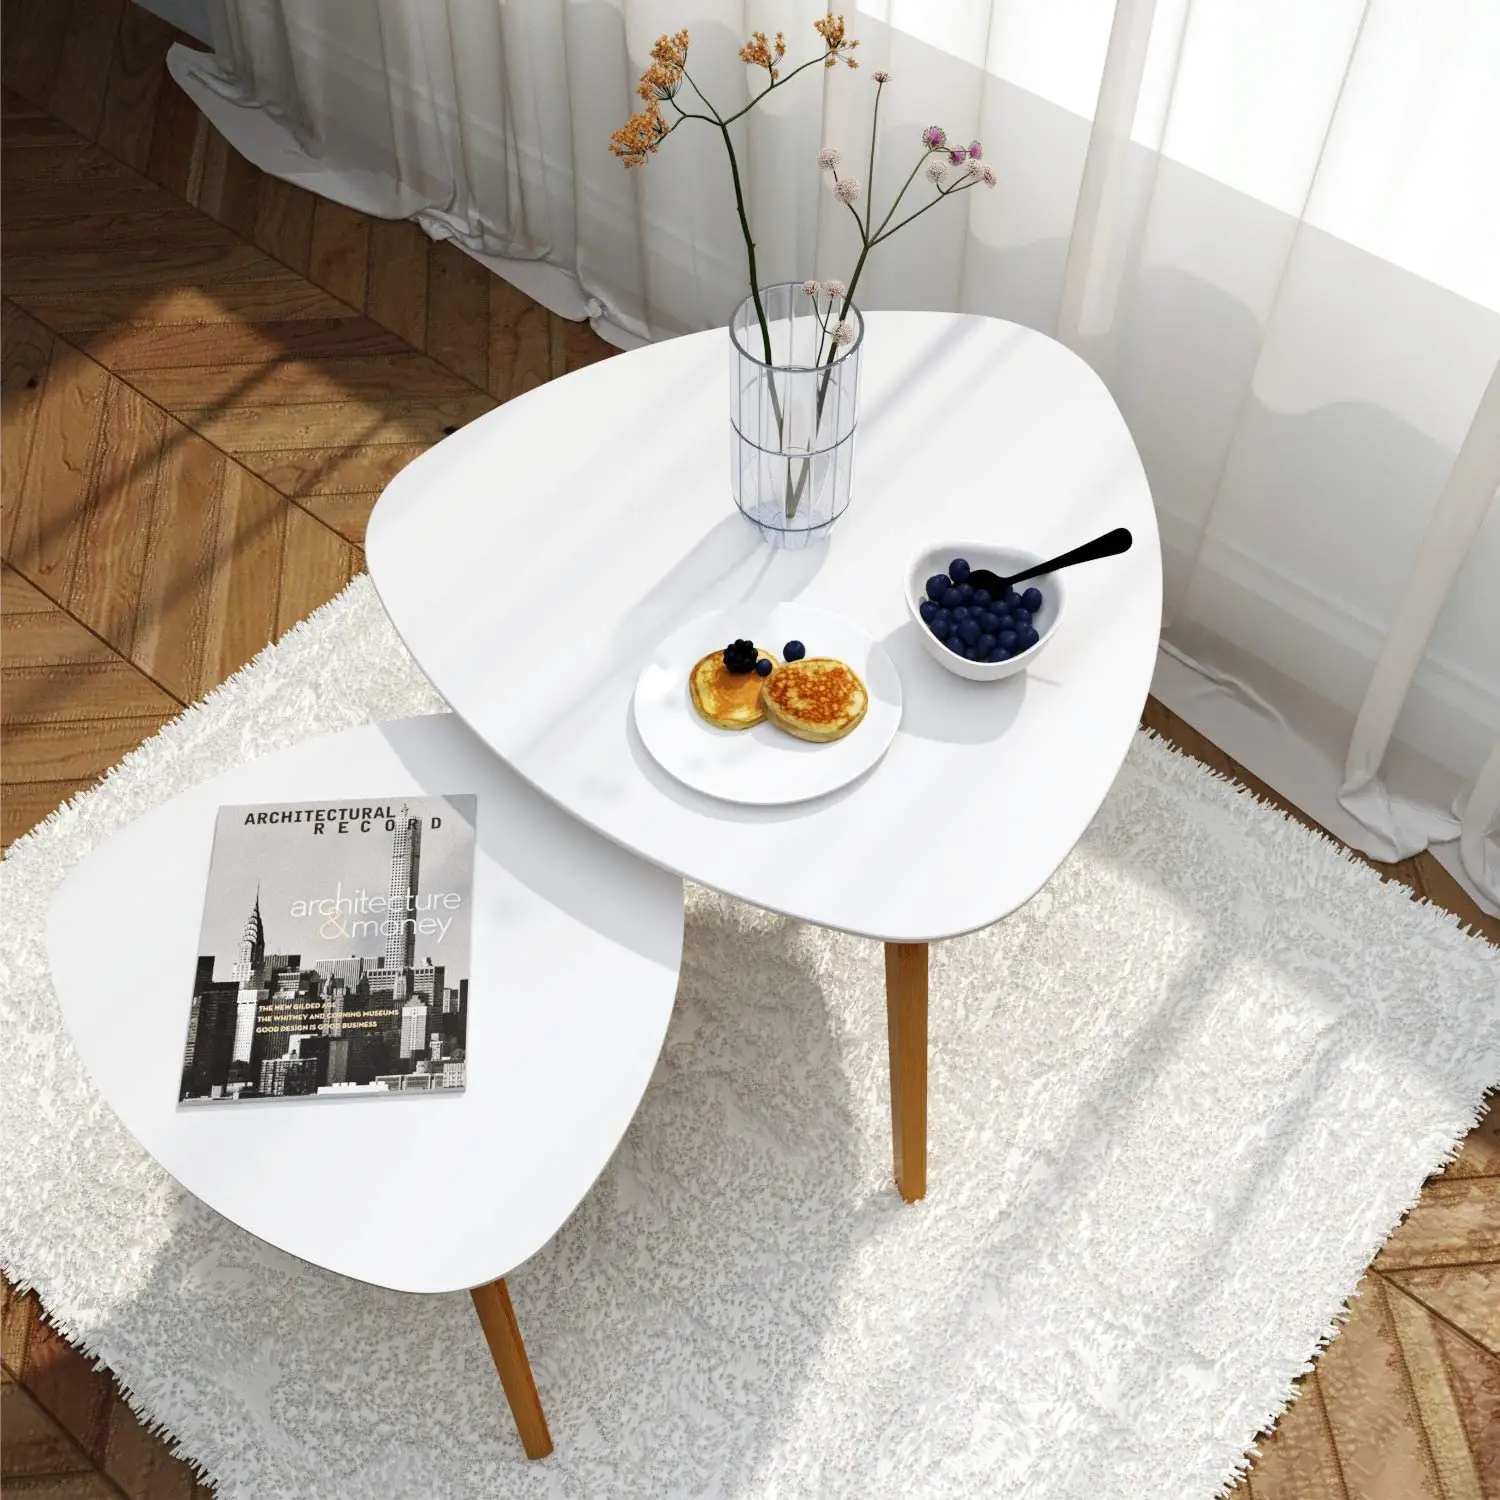 طاولات خشبية أنيقة وعصرية متداخلة طاولة نهائية من الخيرزان، طاولة قهوة من الخشب الصلب لأثاث غرف المعيشة